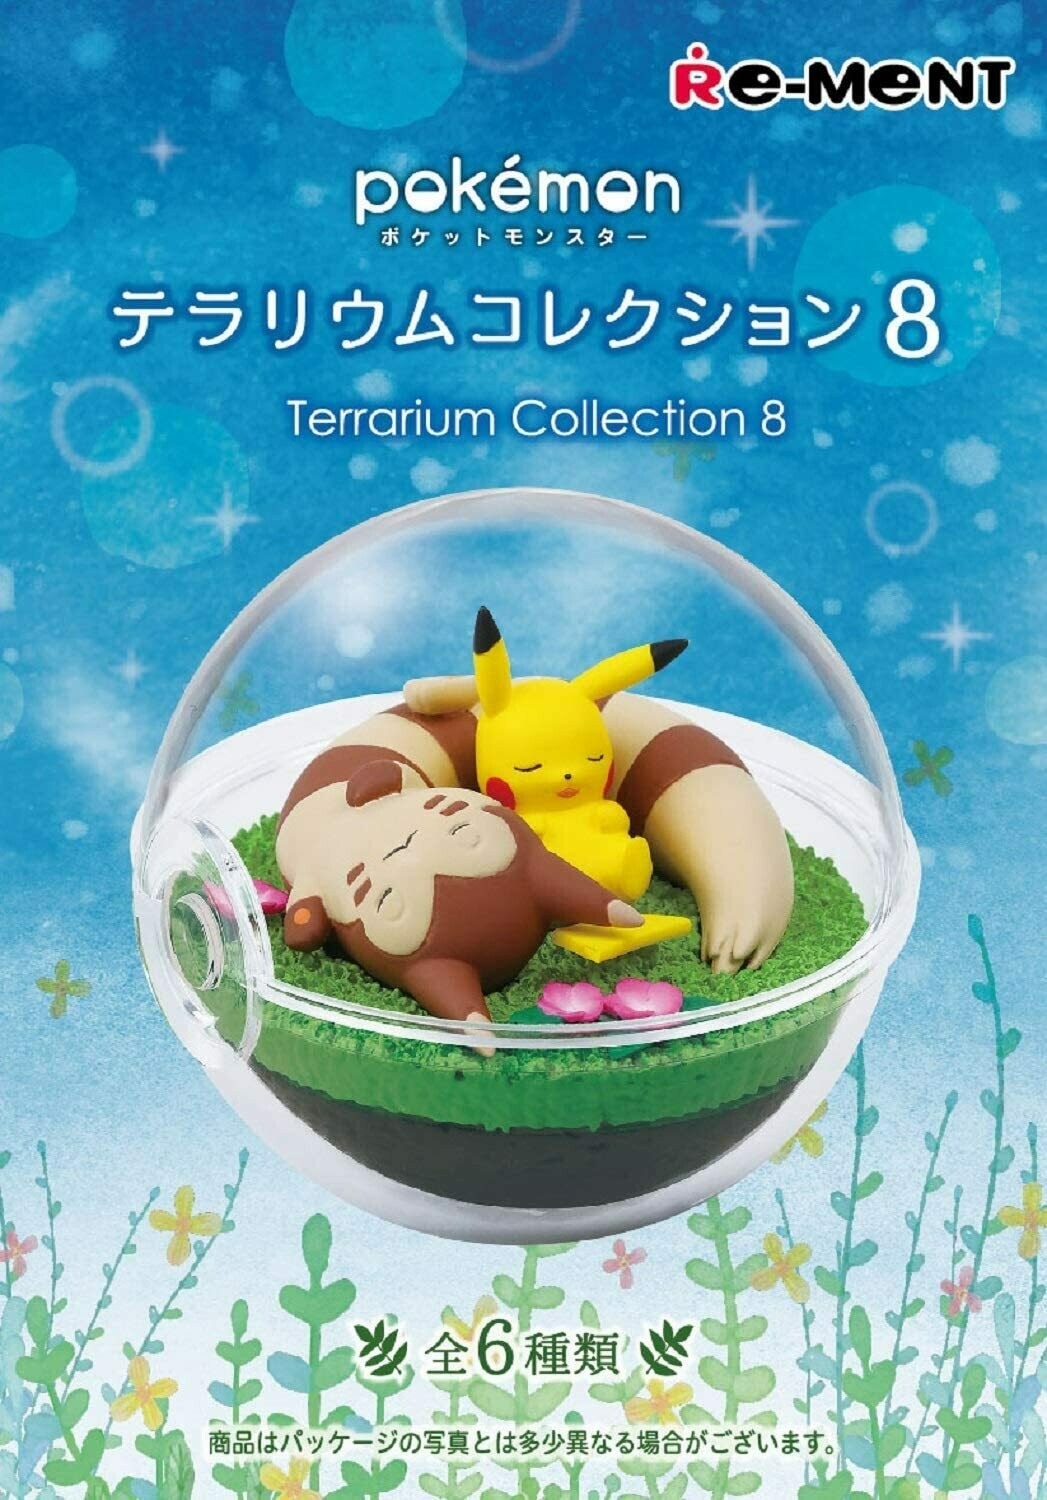 Re-ment Pokemon Terrarium Collection #8 Blind Box